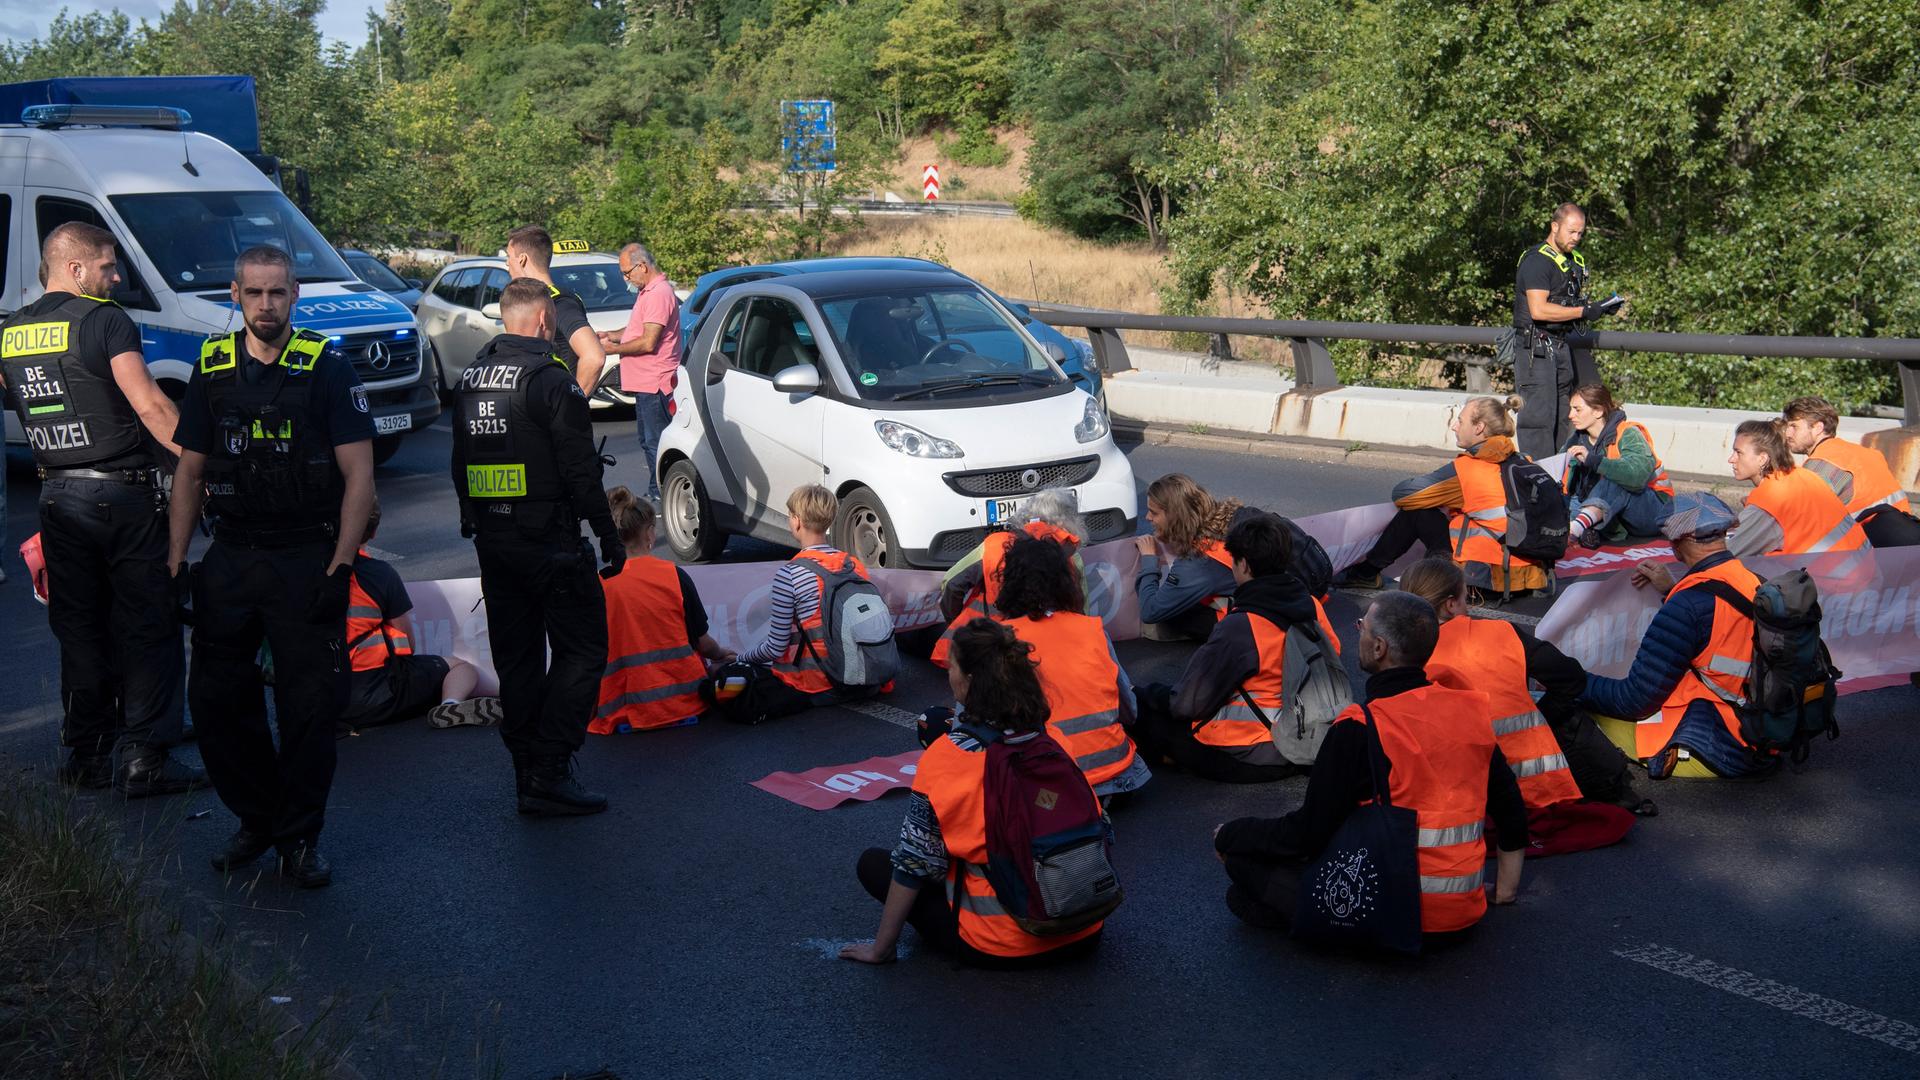 Demonstranten der Gruppe "Letzte Generation" haben eine Ausfahrt der Stadtautobahn im Stadtteil Schöneberg blockiert.